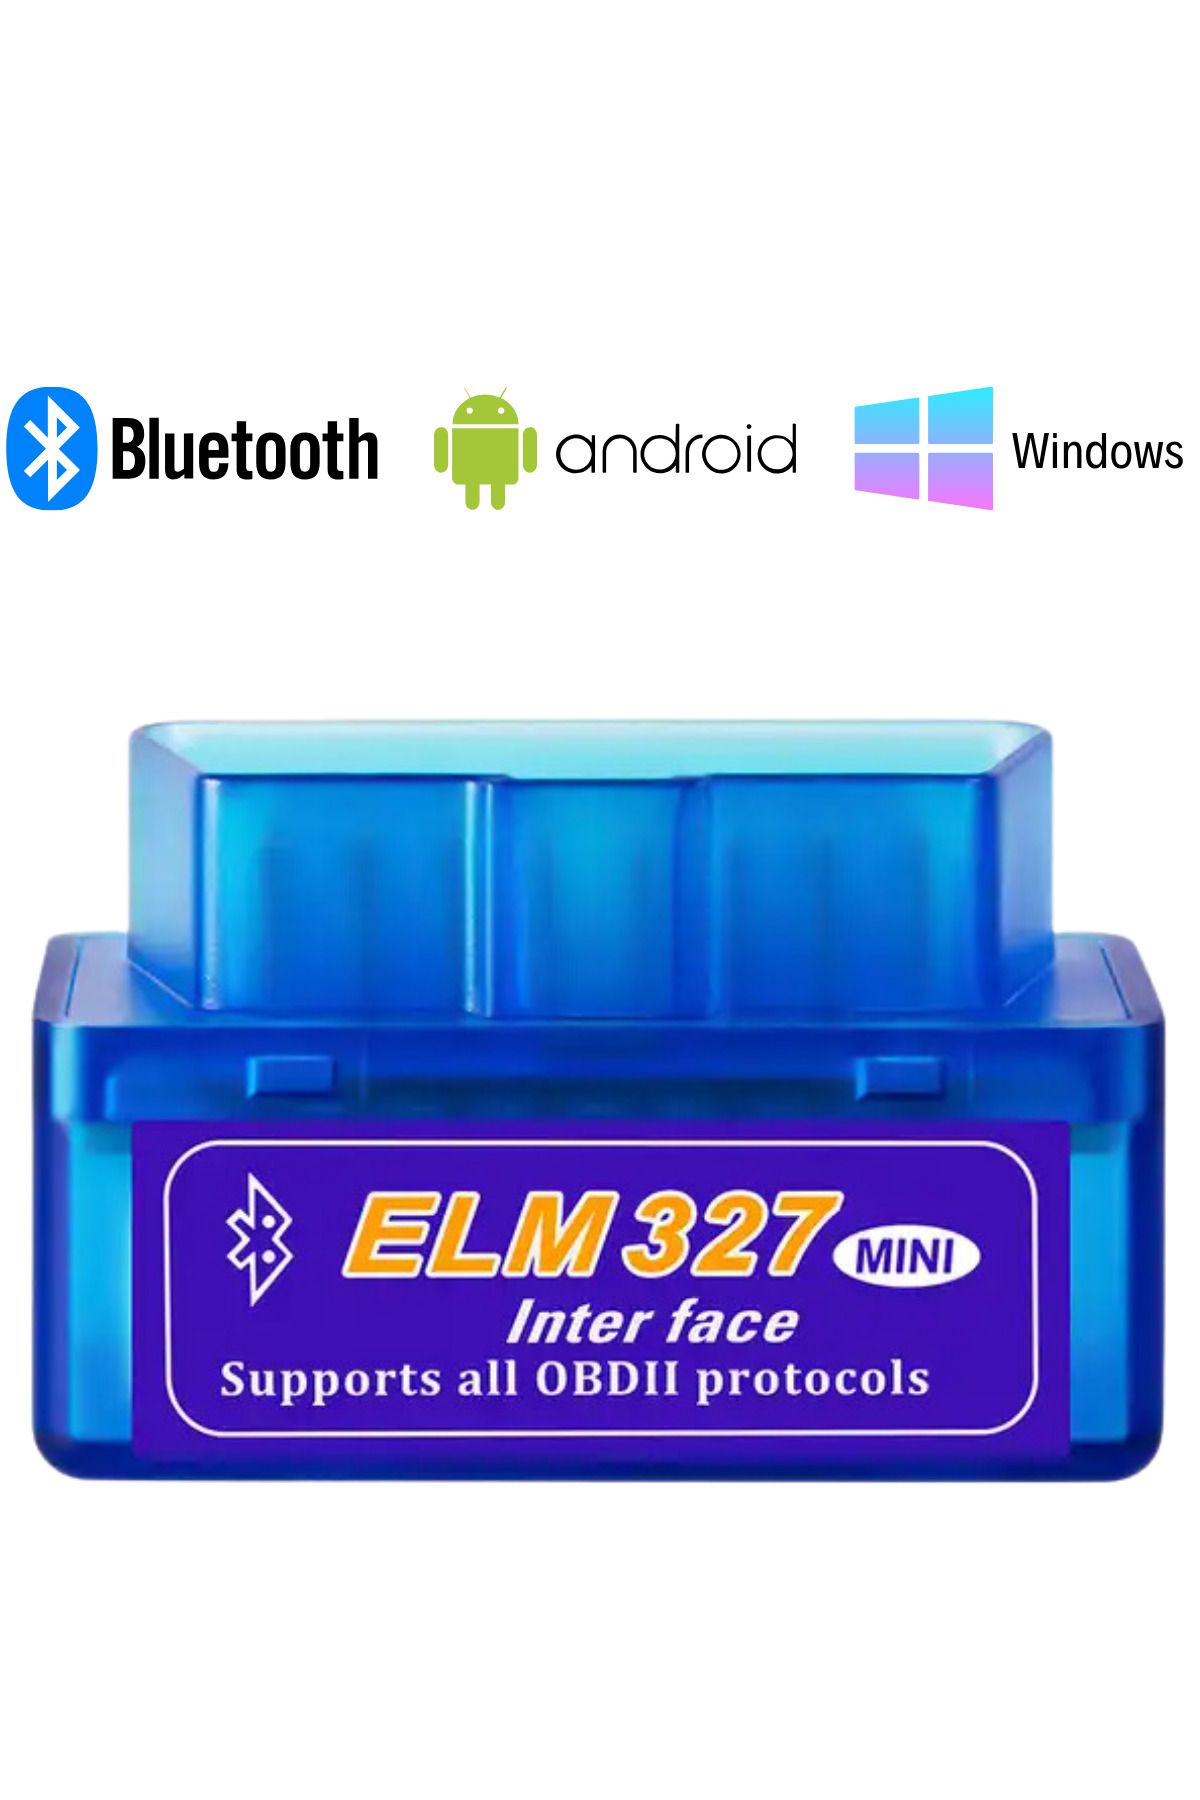 ELM 327 Elm327 Bluetooth Araba Türkçe Araç Arıza Tespit Cihazı Vers. 2.1  Fiyatı, Yorumları - Trendyol